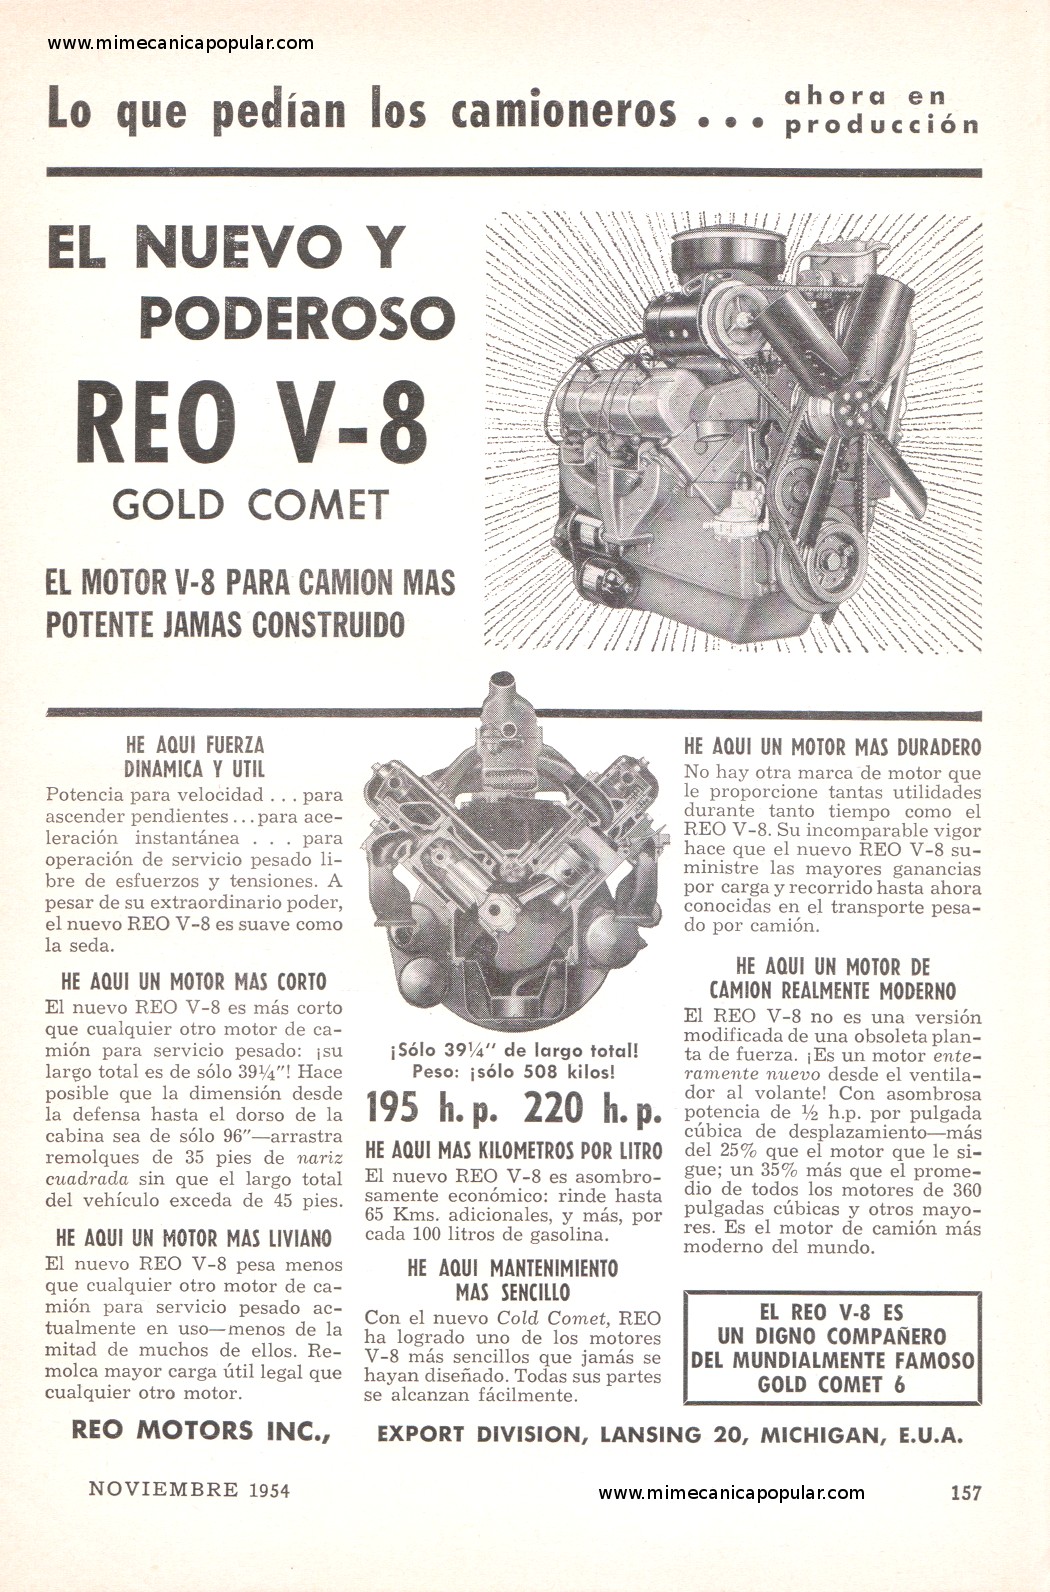 Publicidad - Reo Motors Inc. - Noviembre 1954